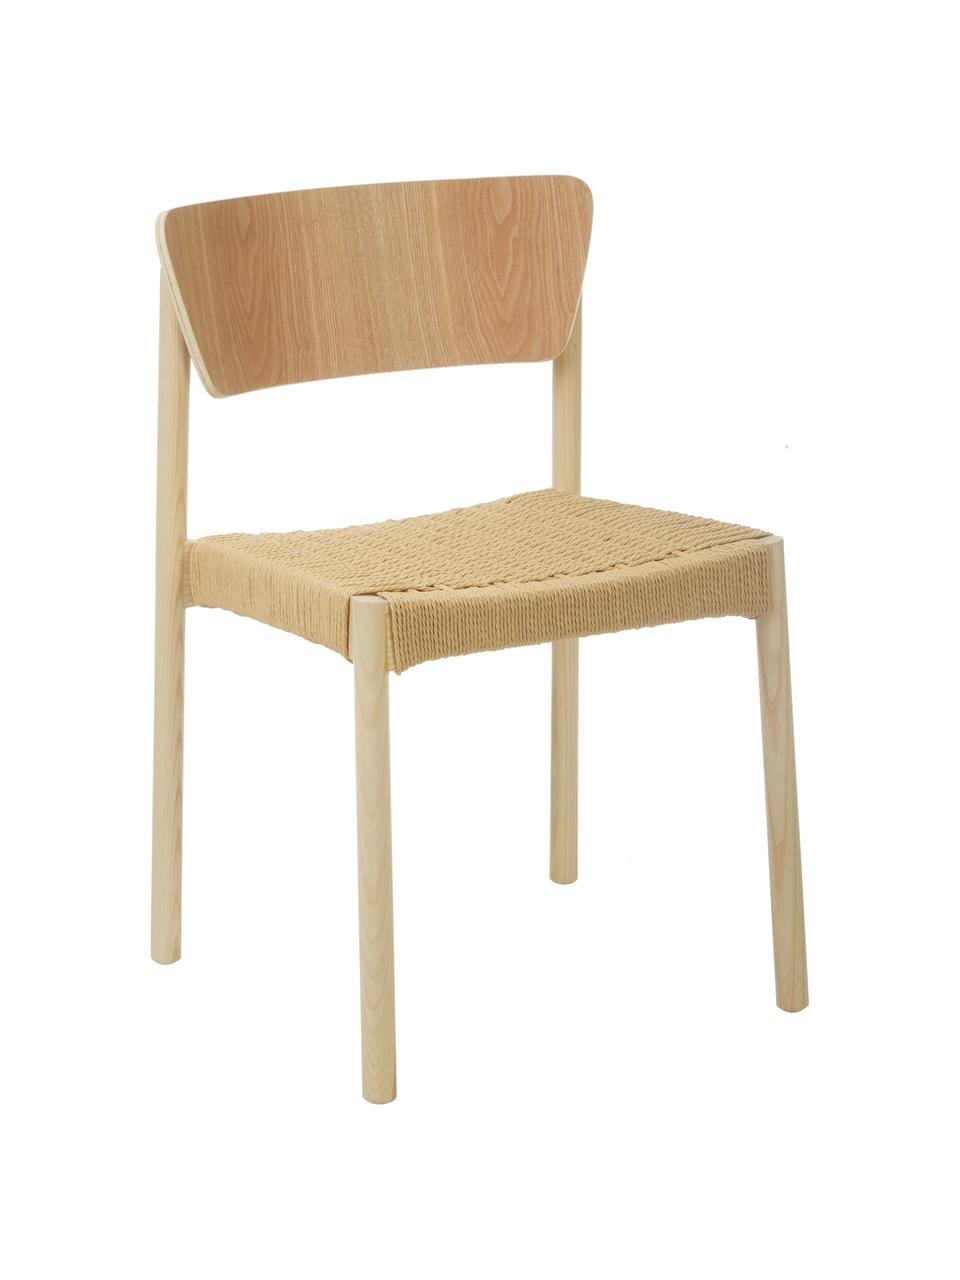 Holzstühle Danny mit Rattan-Sitzfläche, 2 Stück, Gestell: Massives Buchenholz, Sitzfläche: Papierrattan, Rückenlehne: Schichtholz mit Eschenfur, Buchenholz, B 52 x T 51 cm